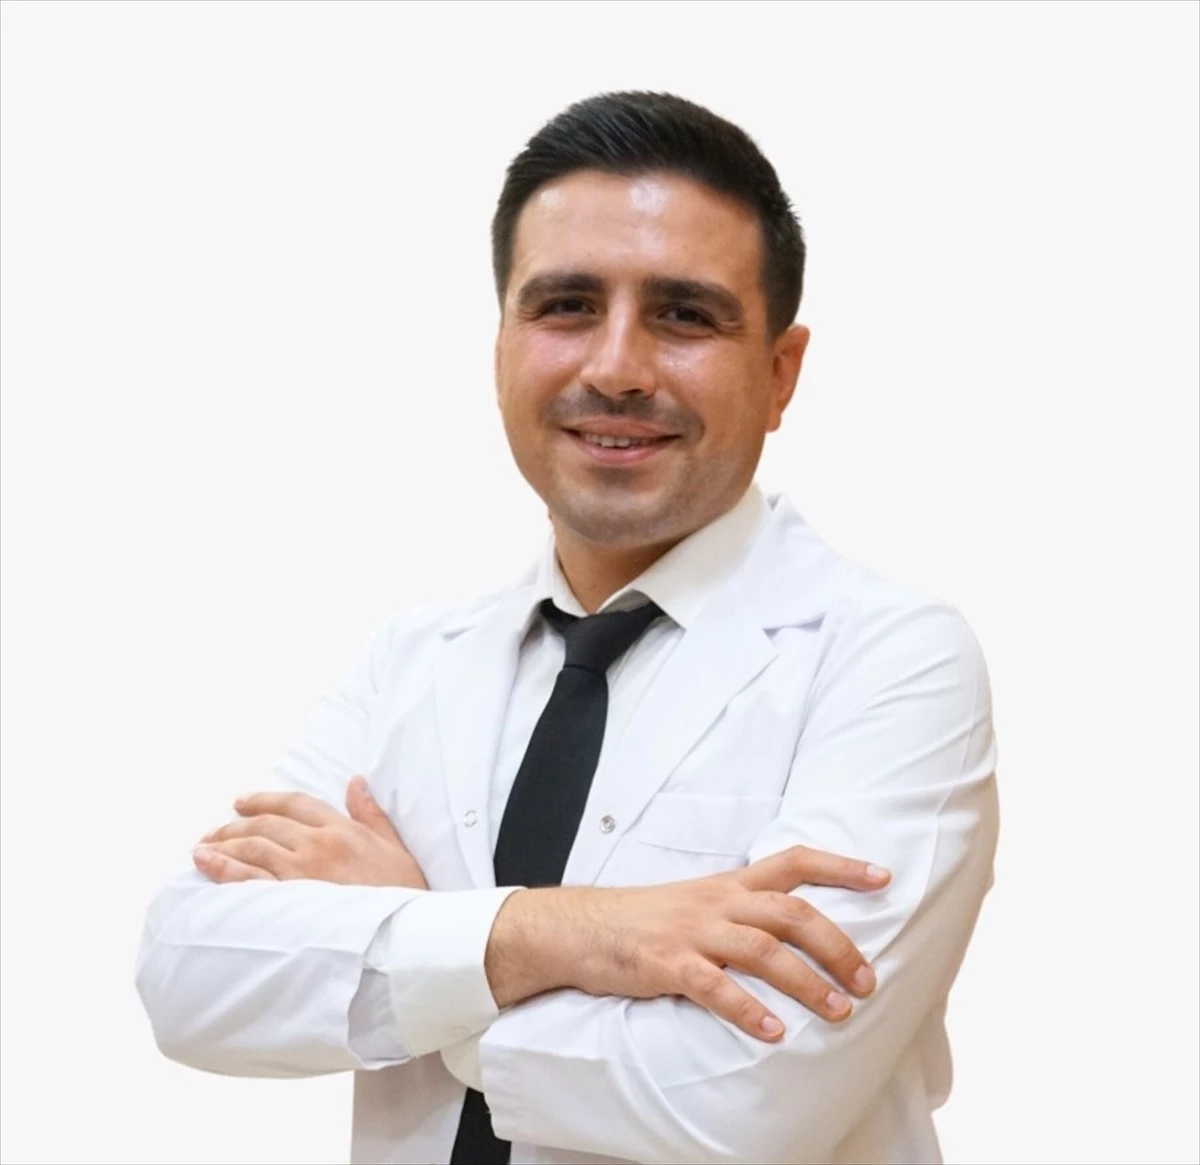 Dermatoloji Uzmanı Dr. Mehmet Uzun, Medical Point Gaziantep Hastanesi\'ne katıldı